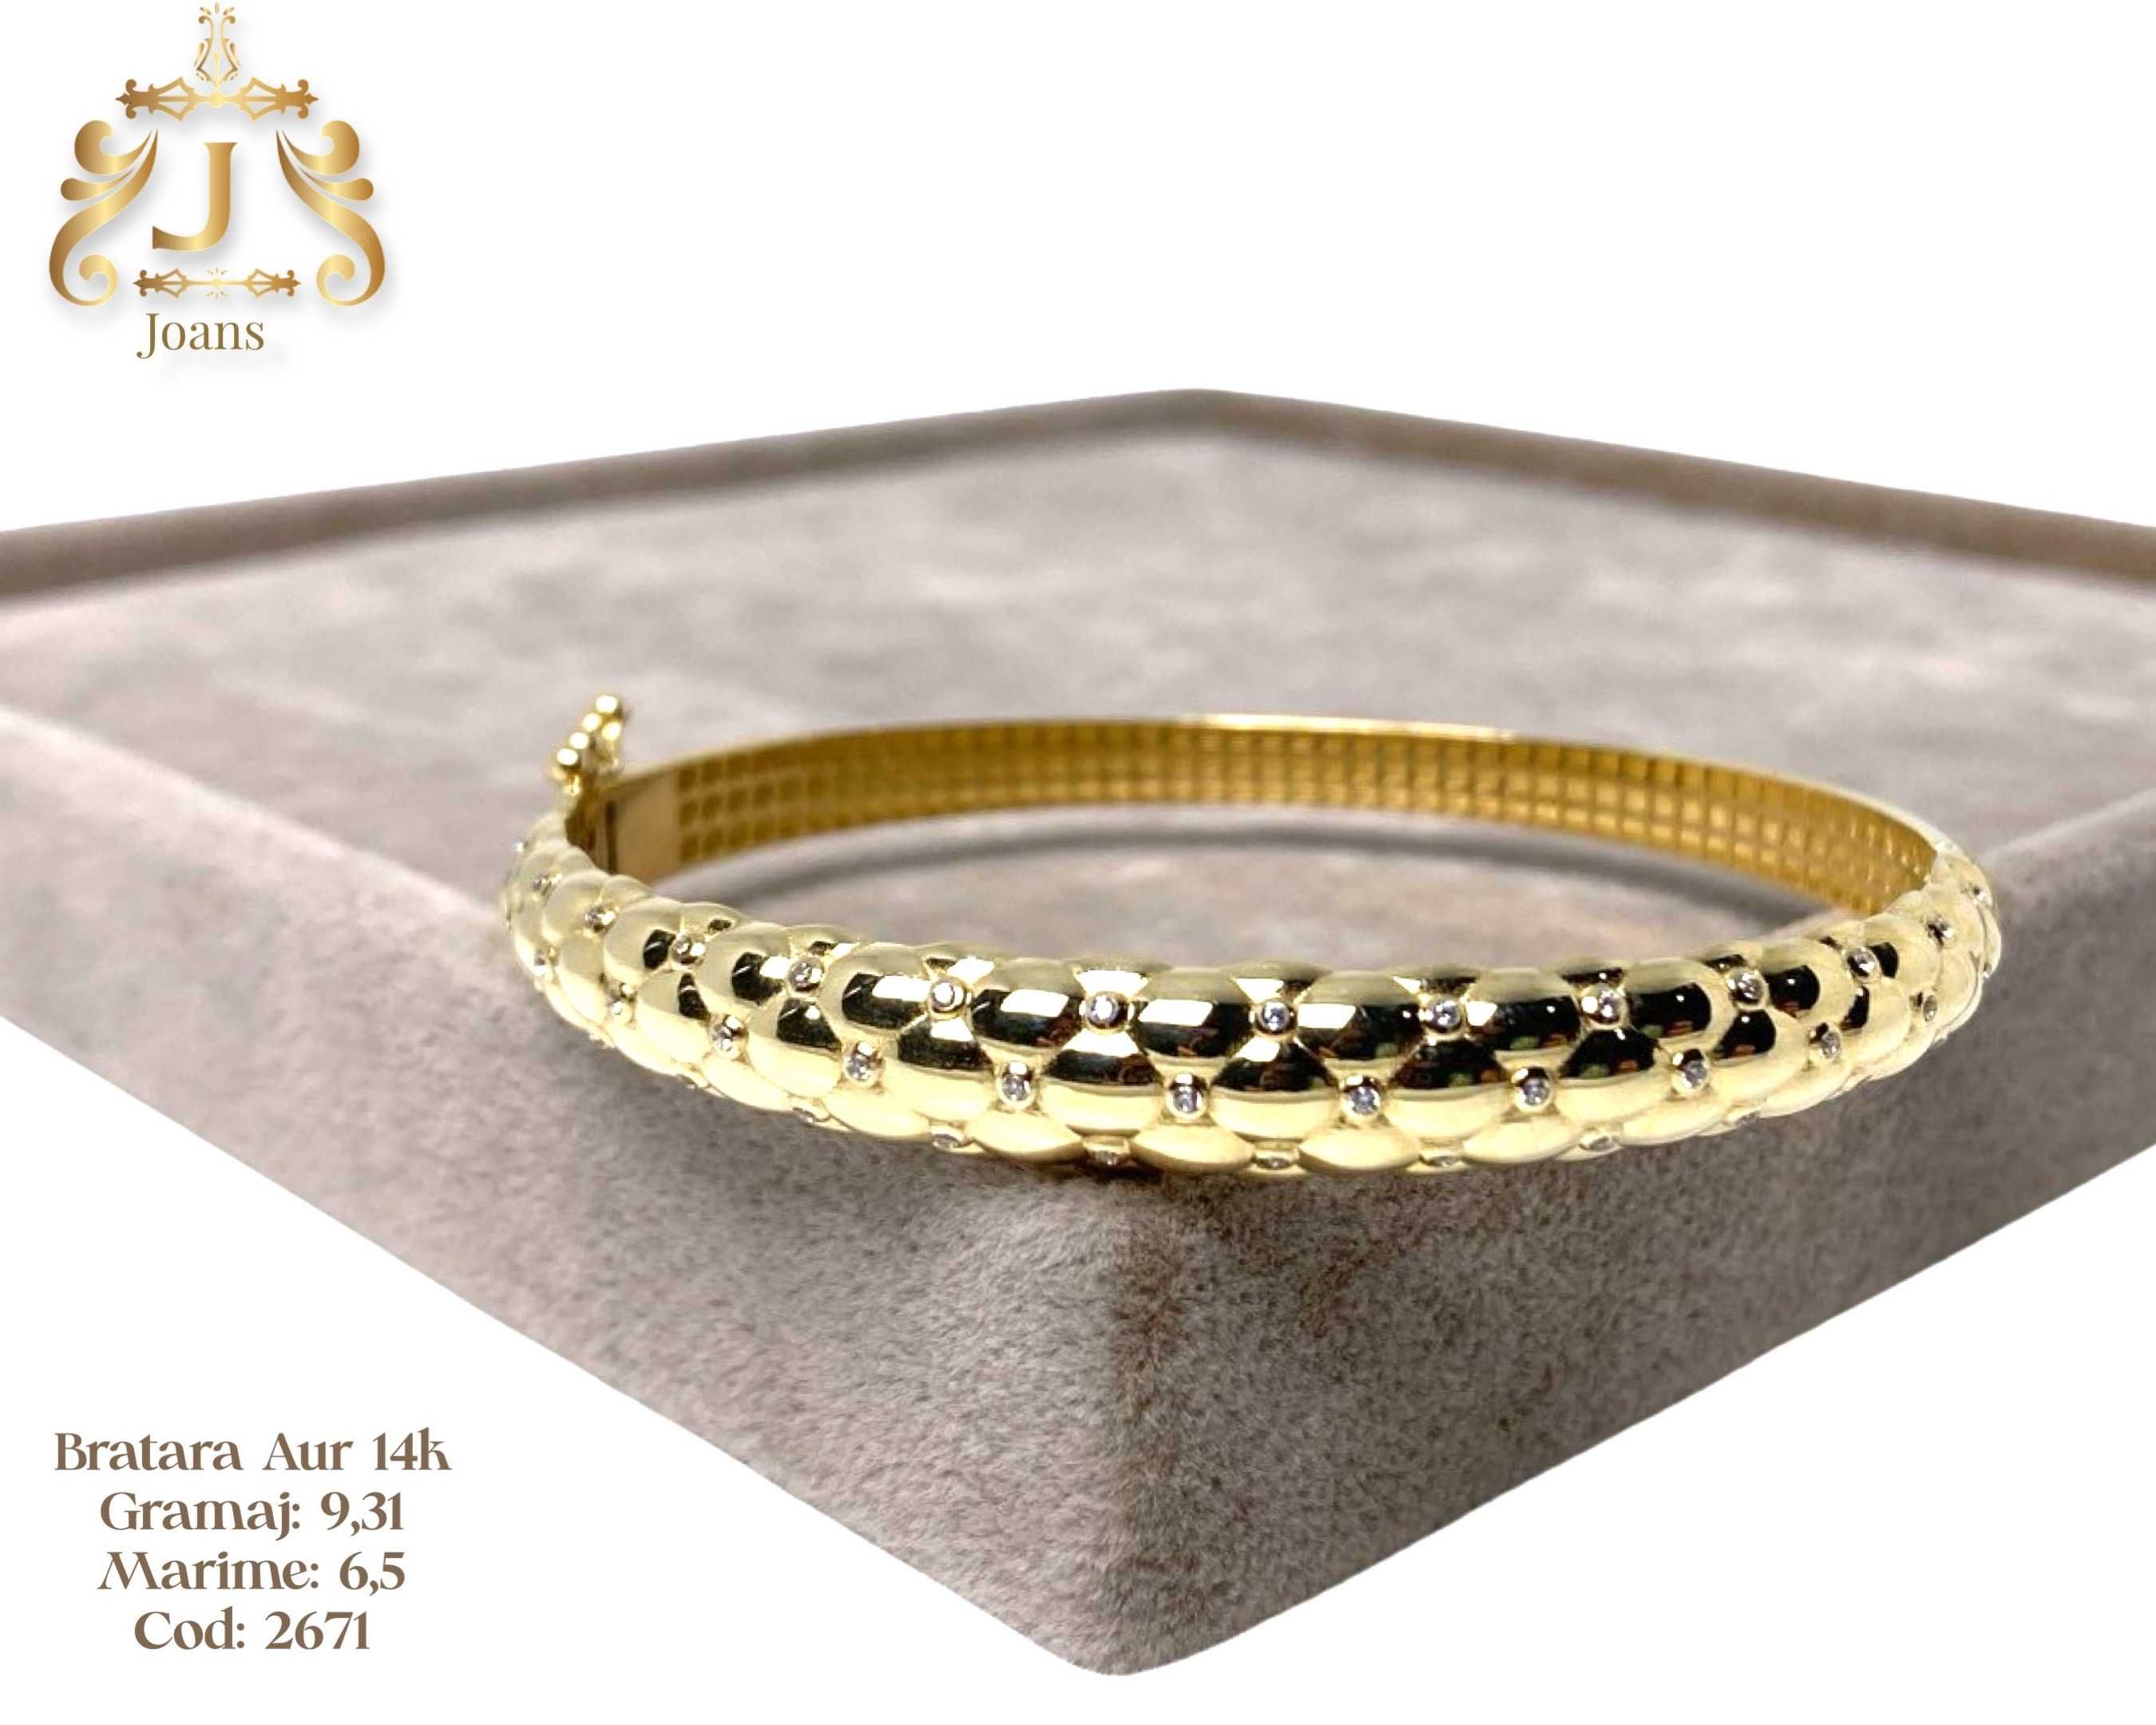 (2671) Bratara Aur 14k, 9,31 grame FB Bijoux Euro Gold